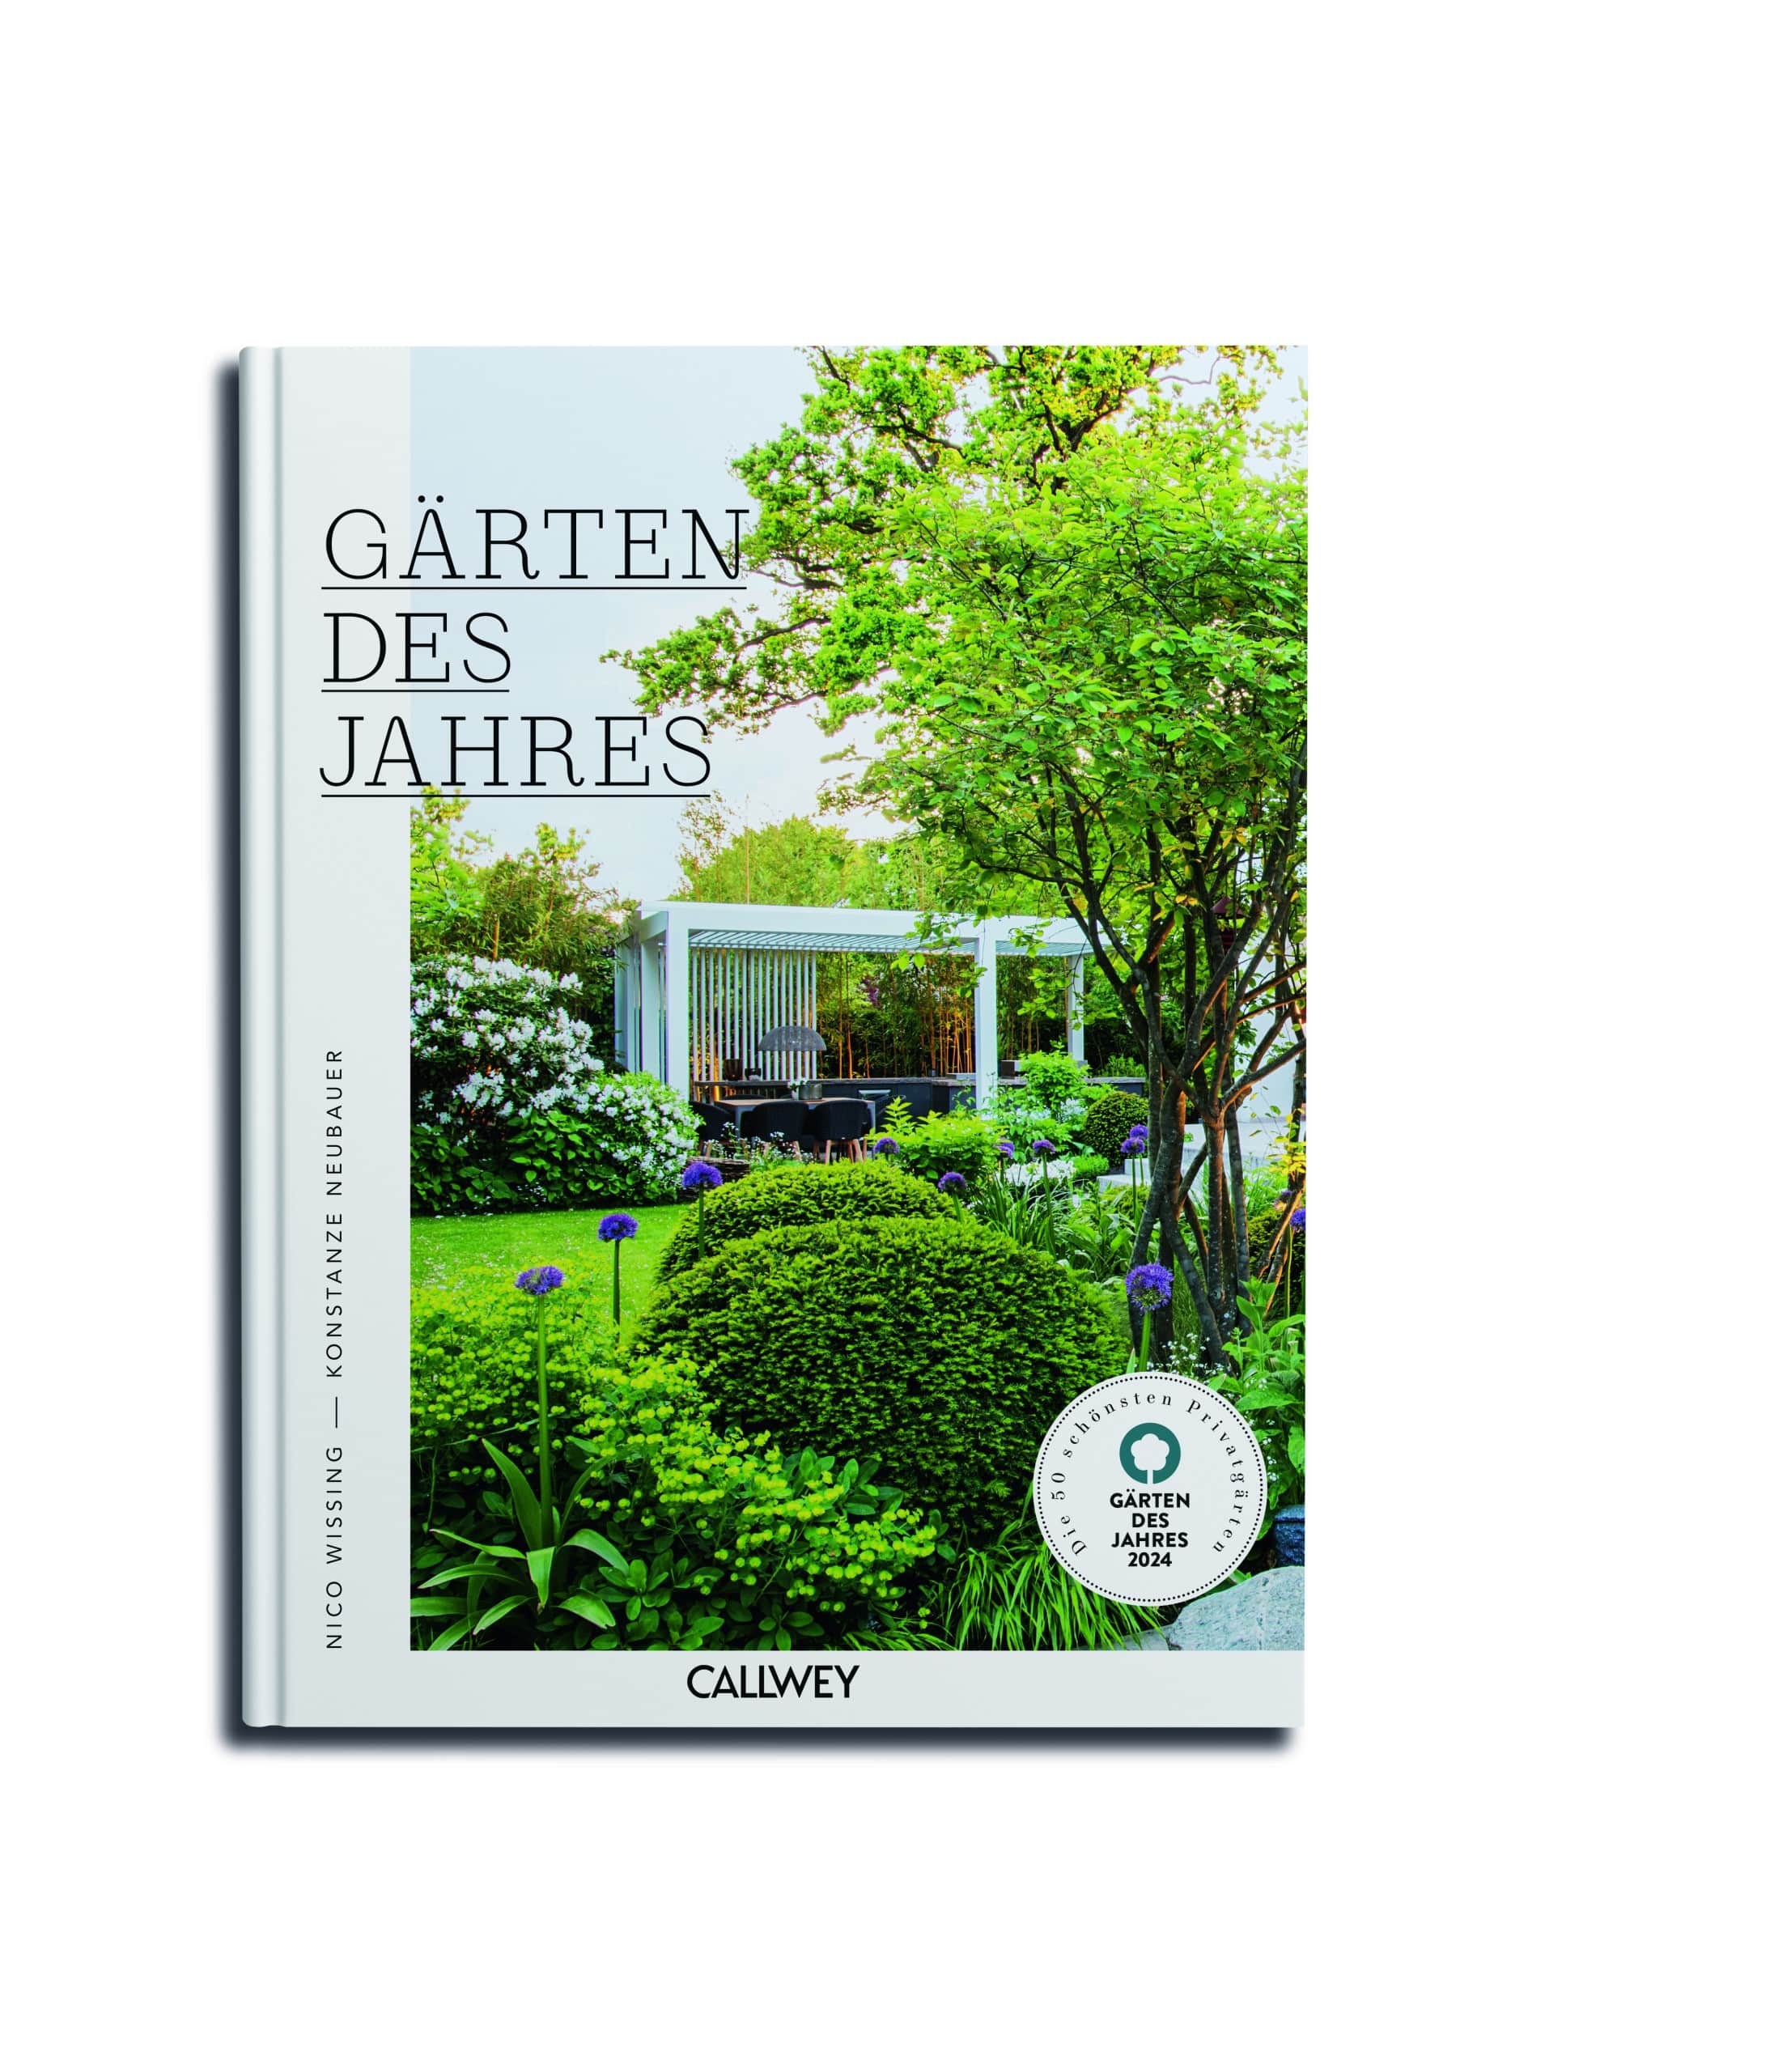 Die Dokumentation zum Wettbewerb Gärten des Jahres erscheint im Callwey Verlag. Coverfoto: Ulrike Romeis